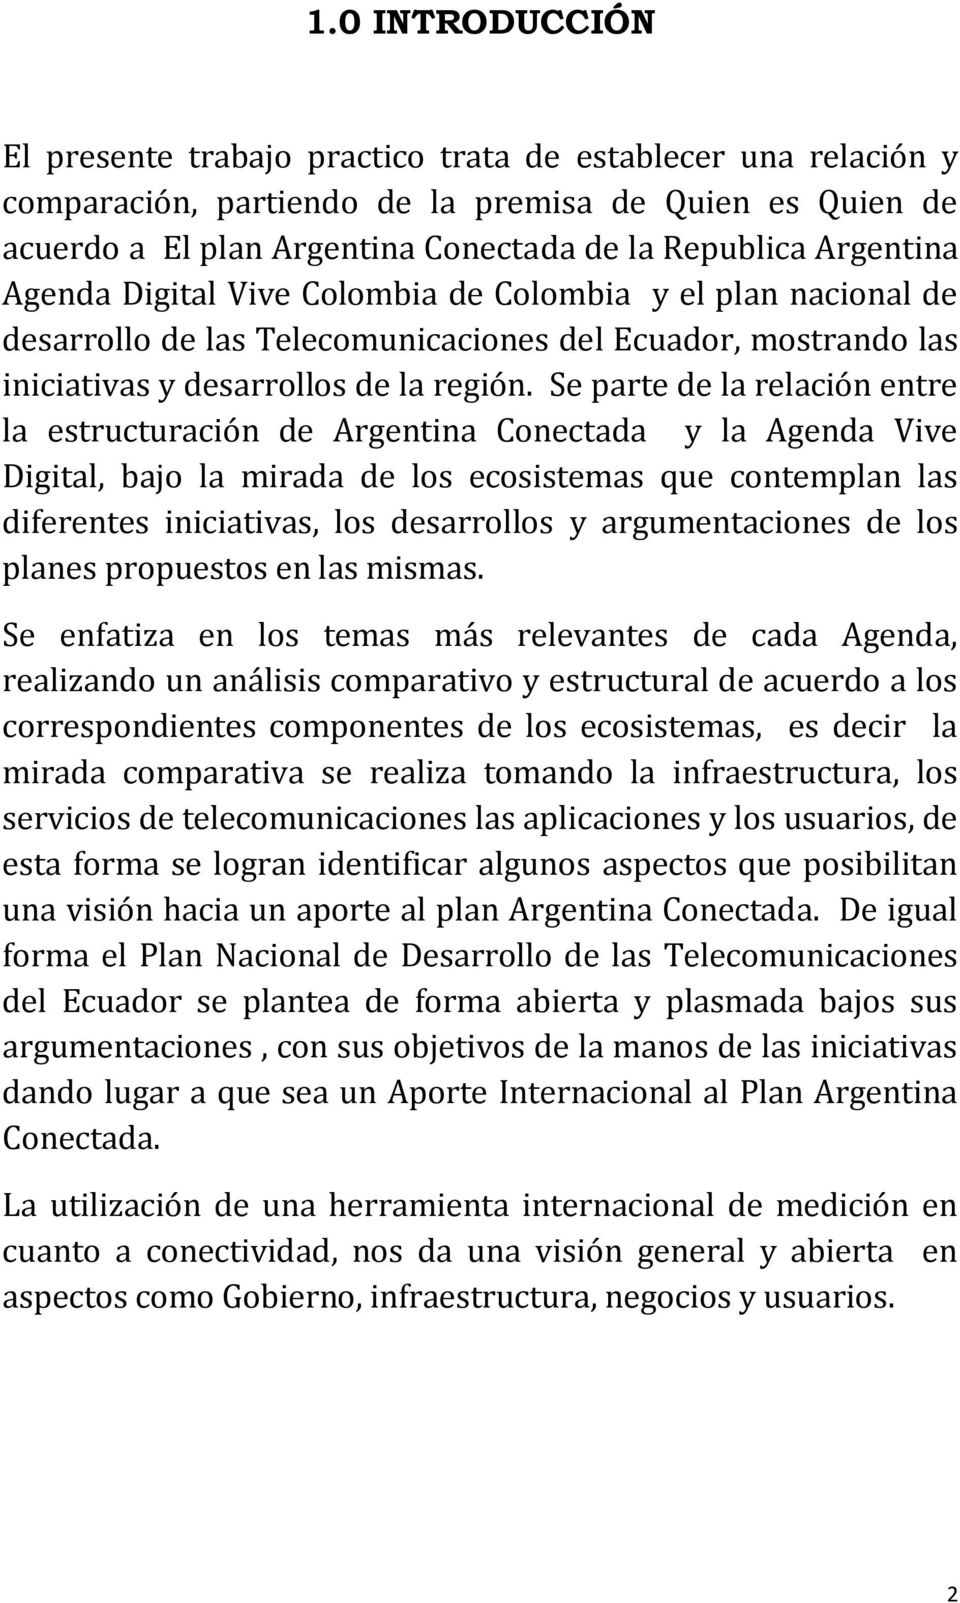 Se parte de la relación entre la estructuración de Argentina Conectada y la Agenda Vive Digital, bajo la mirada de los ecosistemas que contemplan las diferentes iniciativas, los desarrollos y